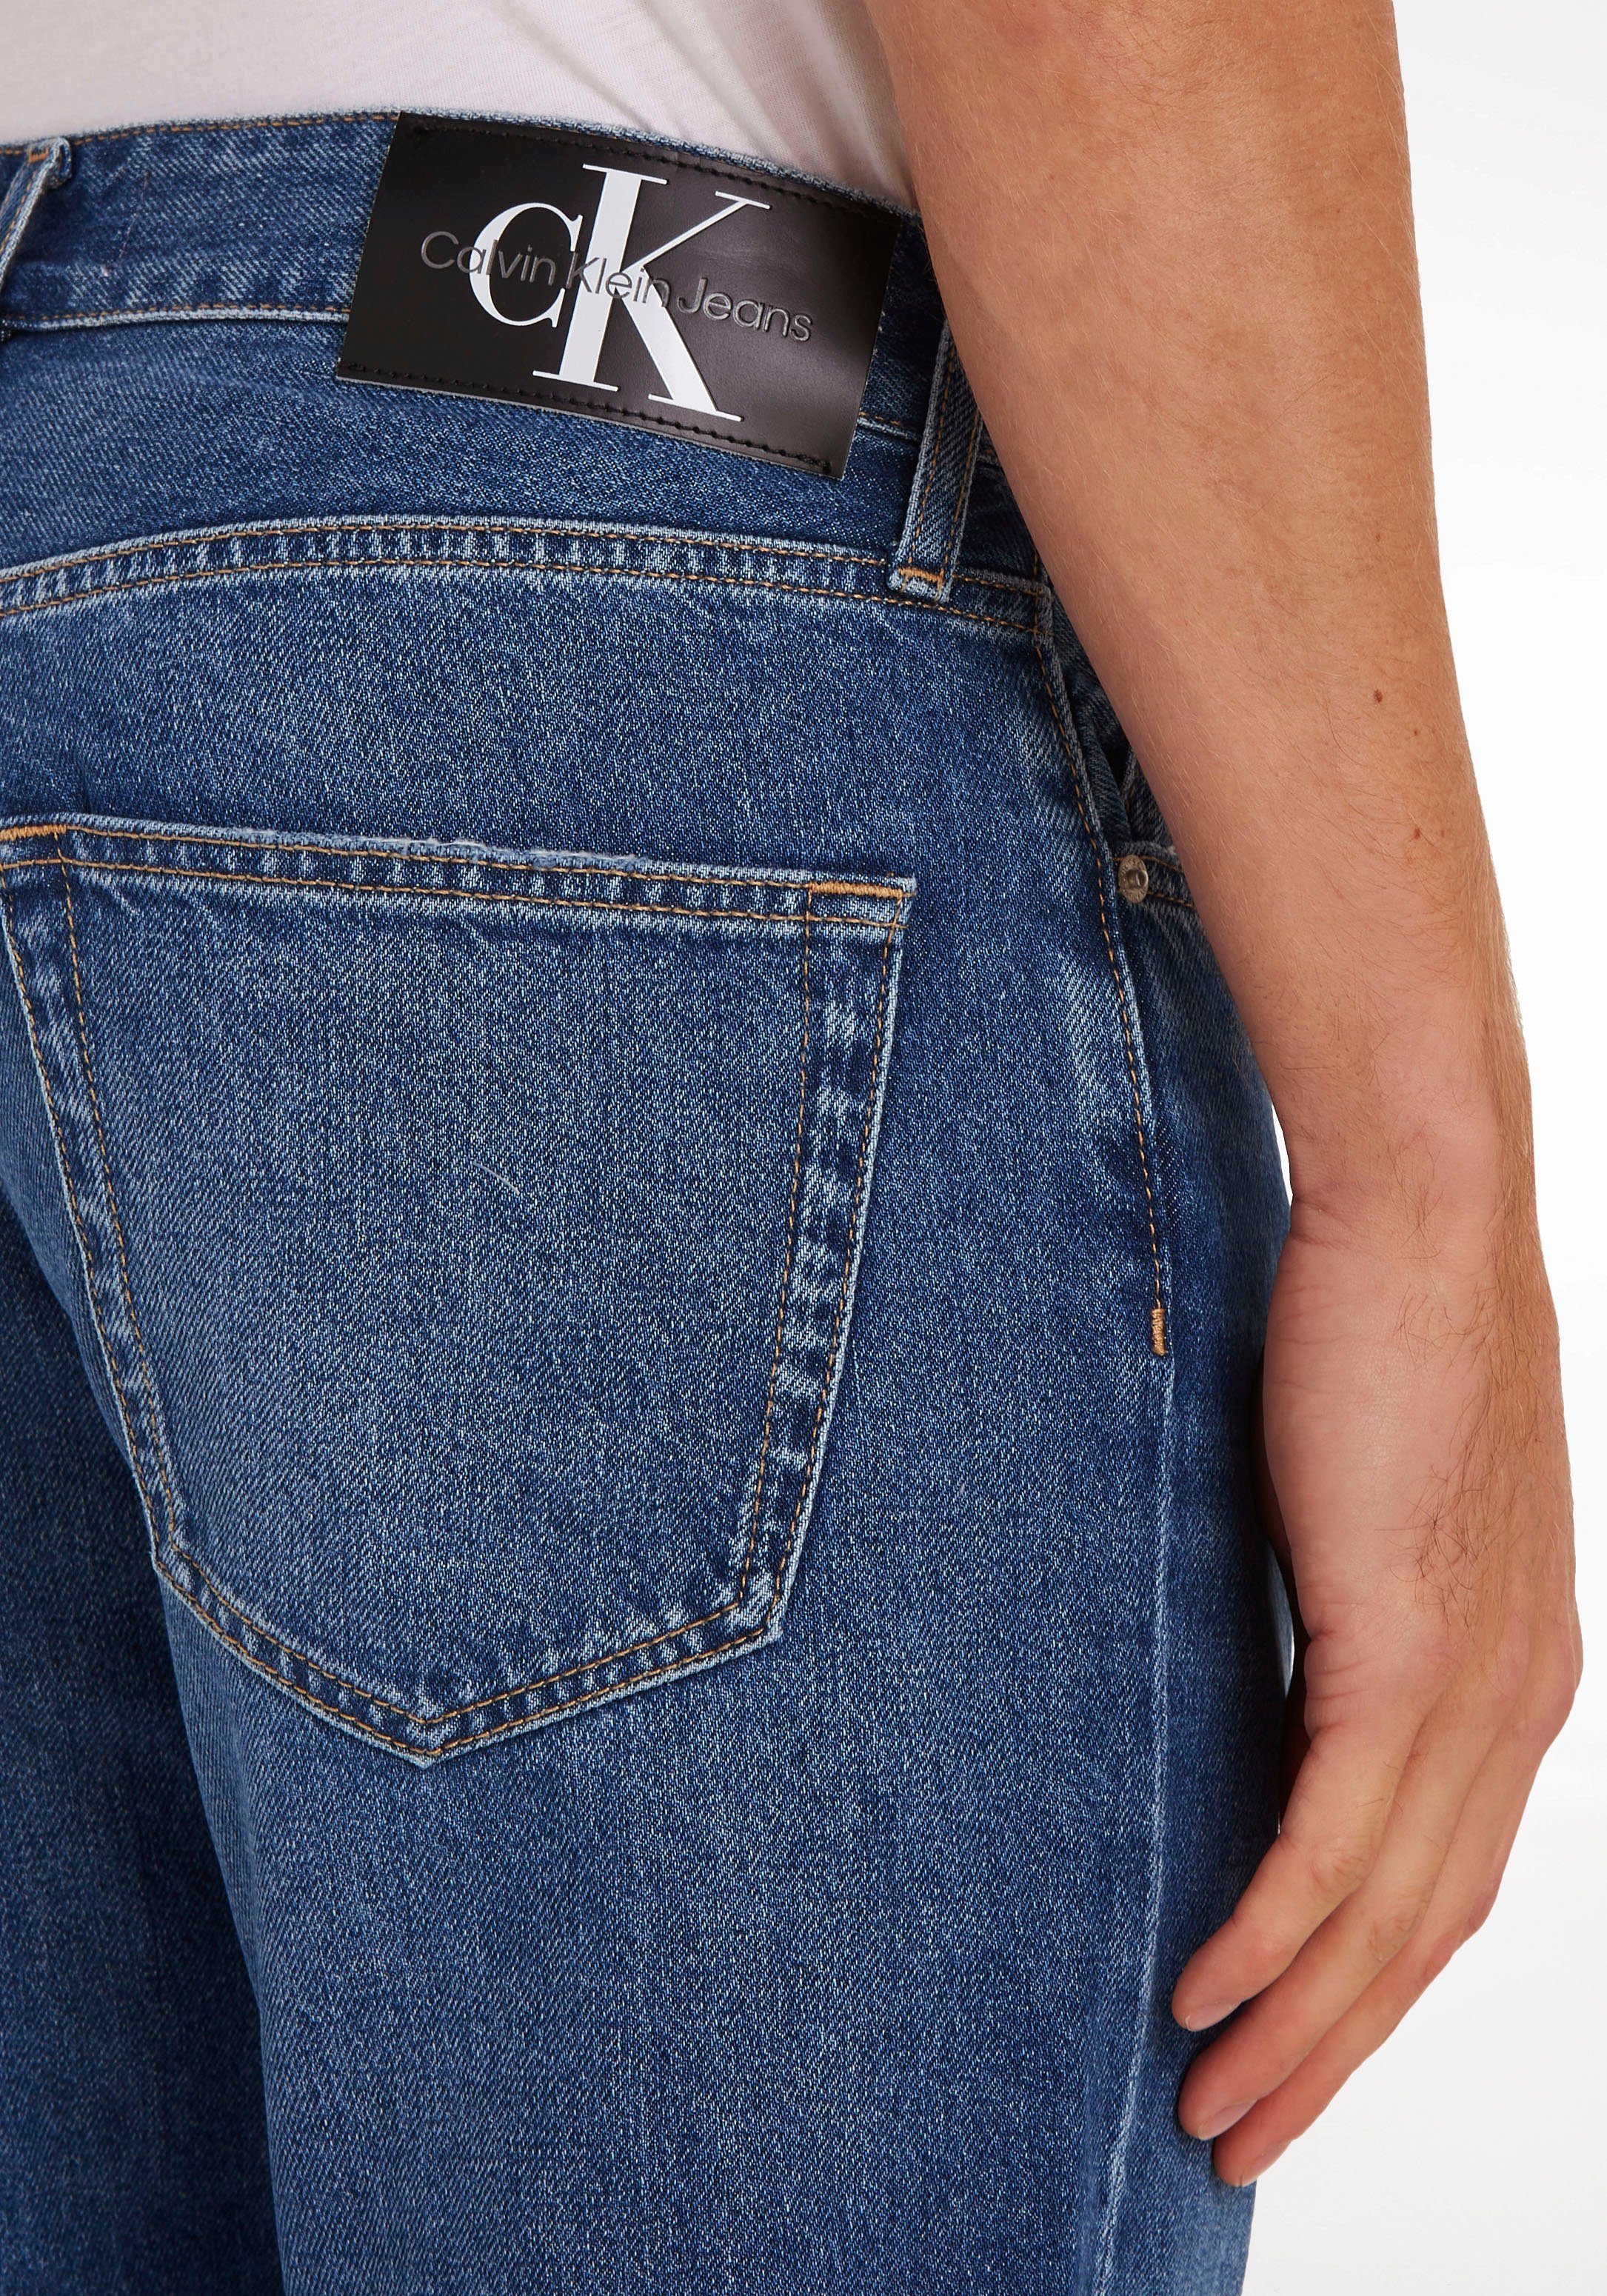 JEAN im Calvin blue_denim Jeans DAD Dad-Jeans 5-Pocket-Style Klein